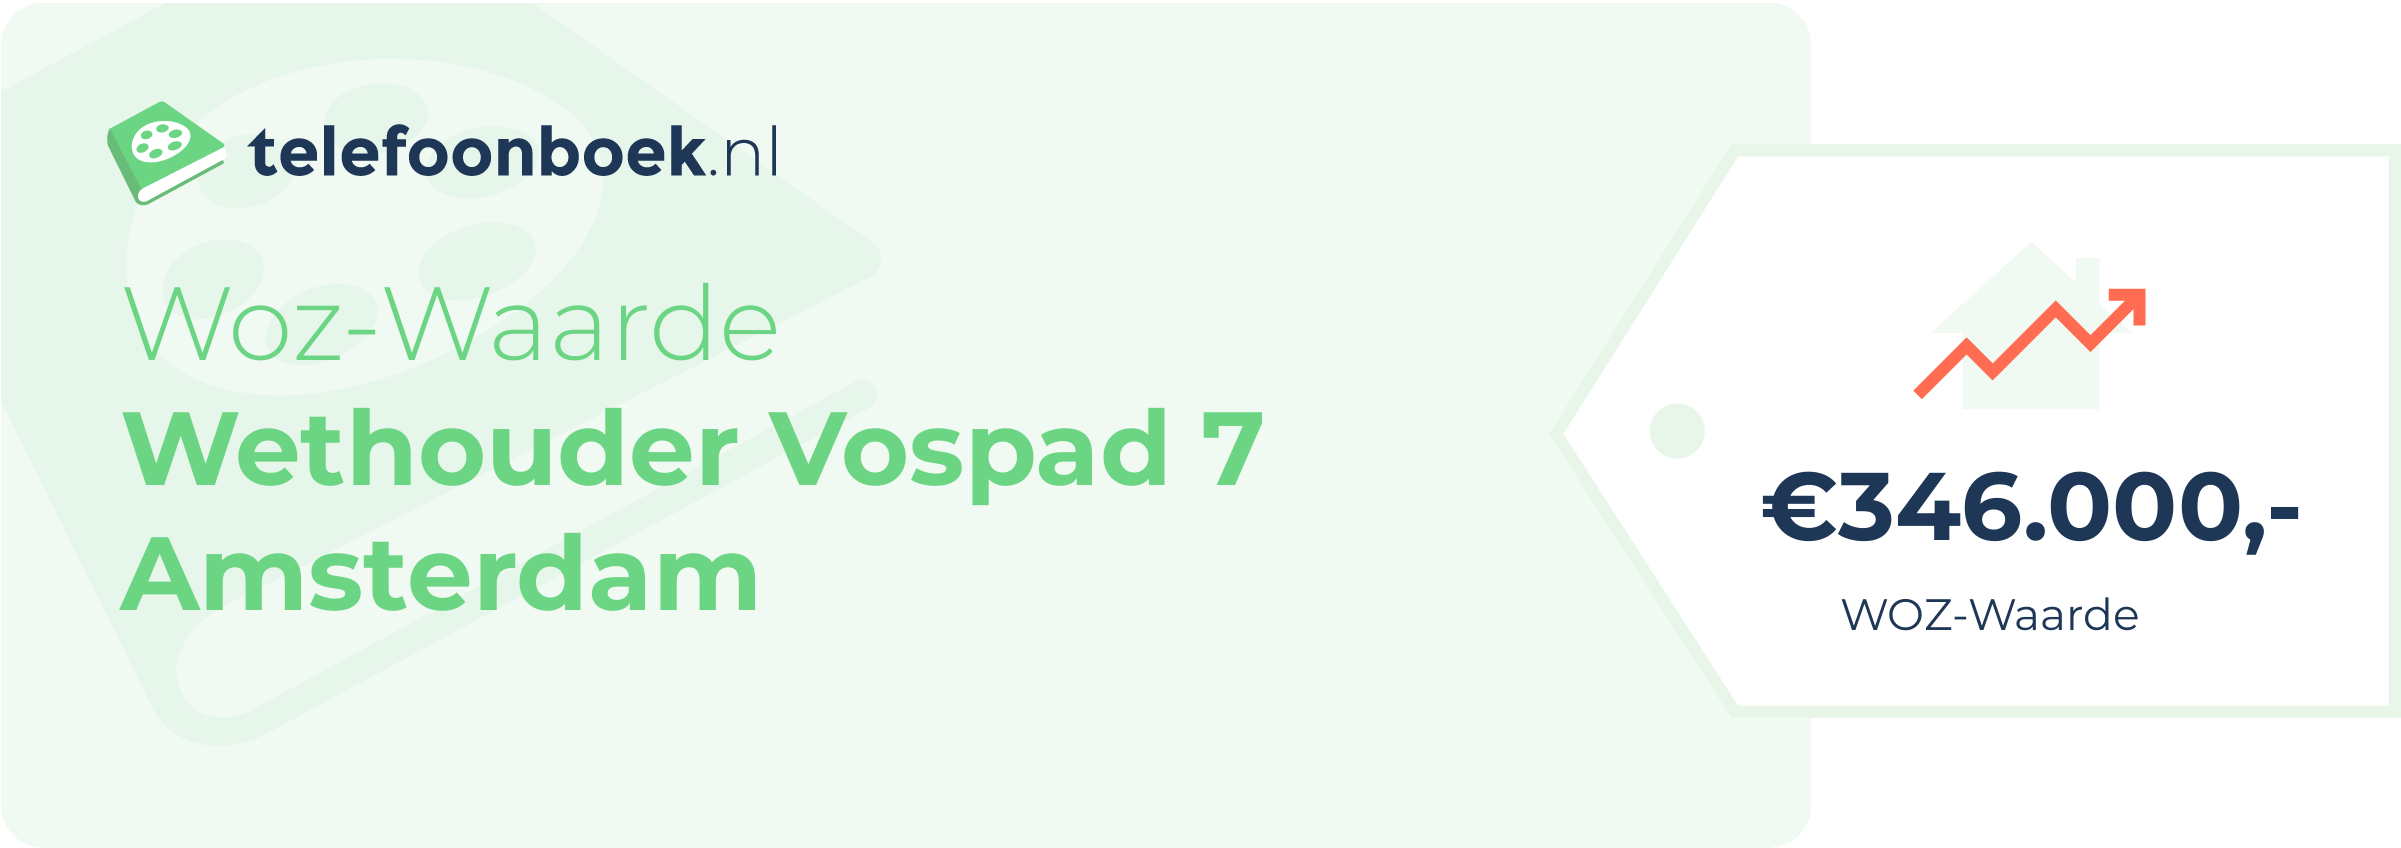 WOZ-waarde Wethouder Vospad 7 Amsterdam